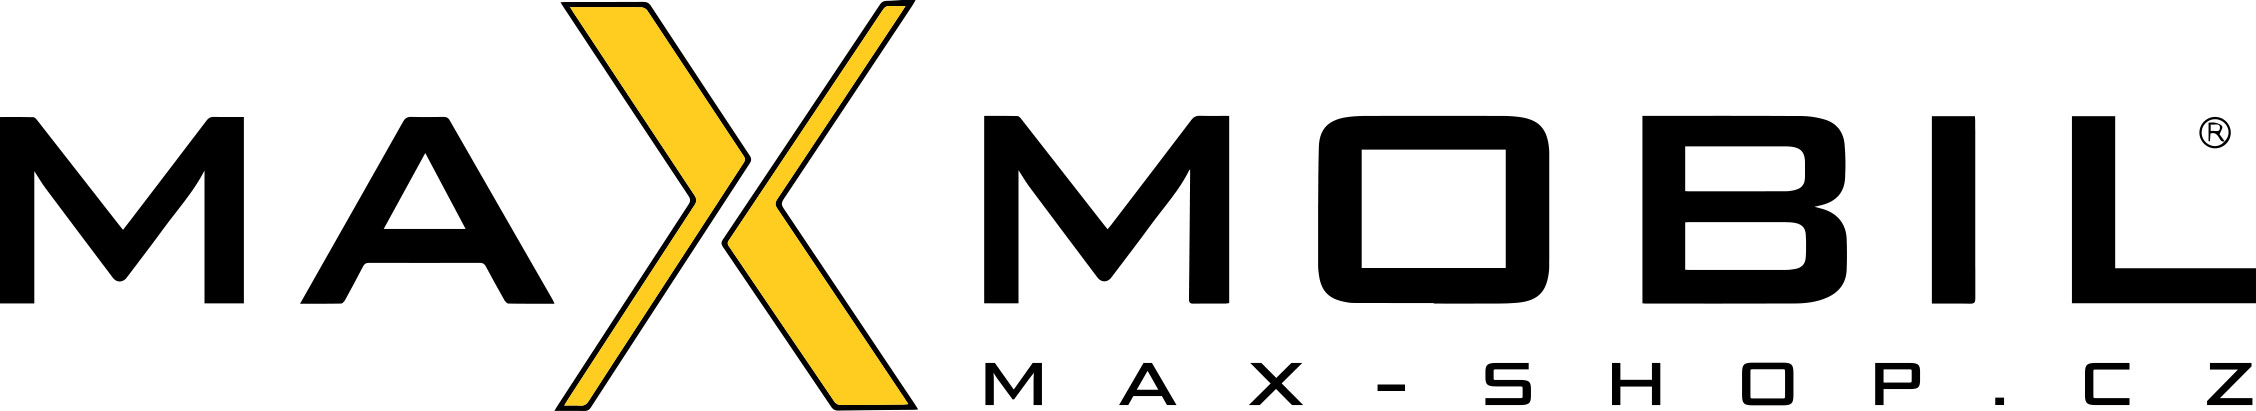 MAXmobil max-shop.cz s.r.o.